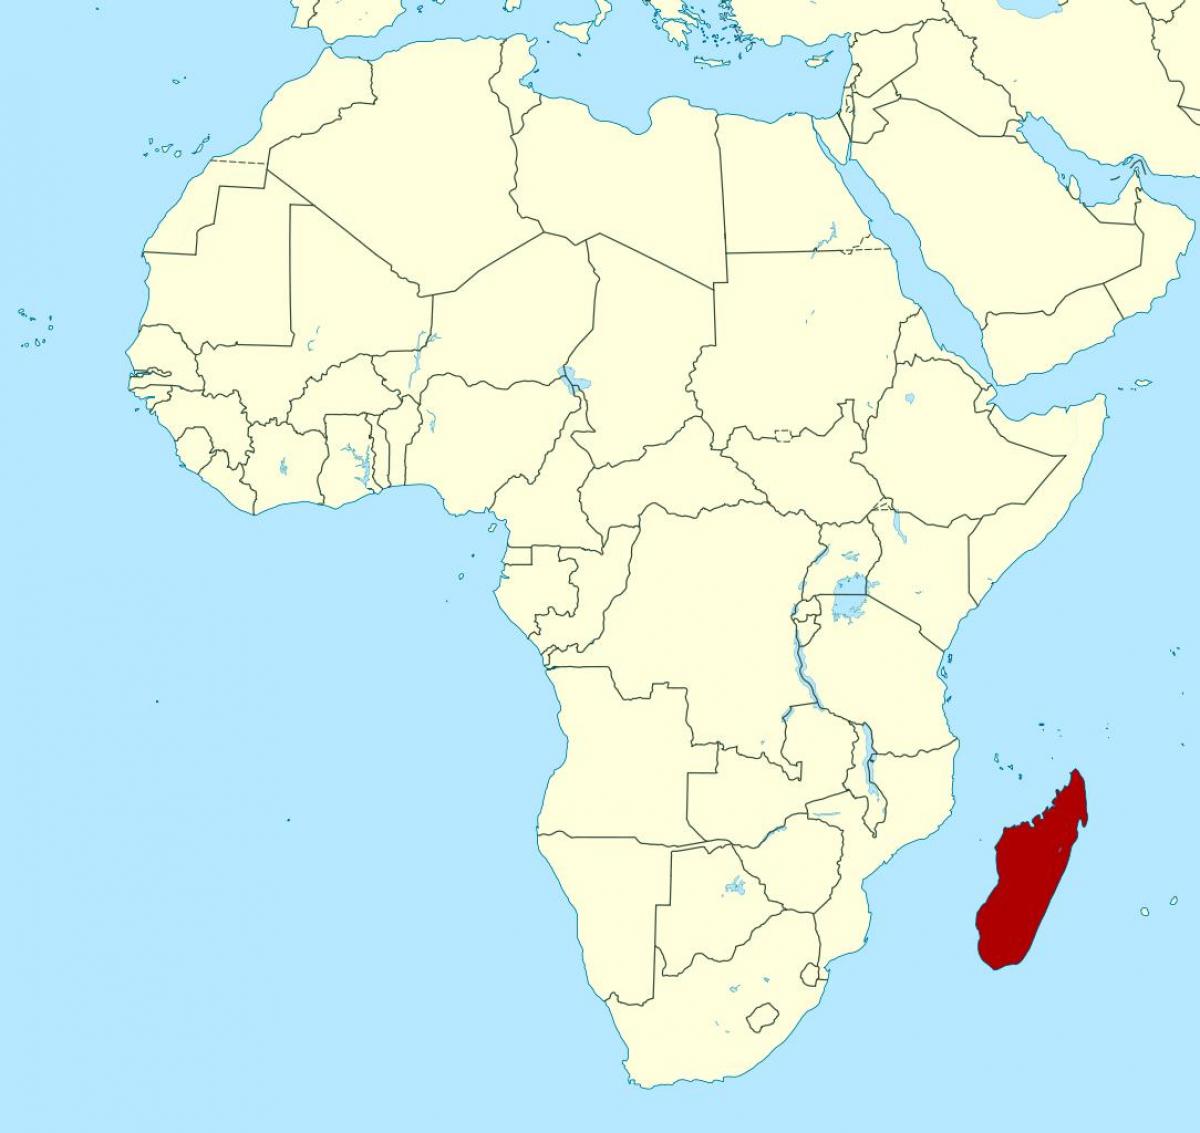 Madagaskar über die Afrika-Karte